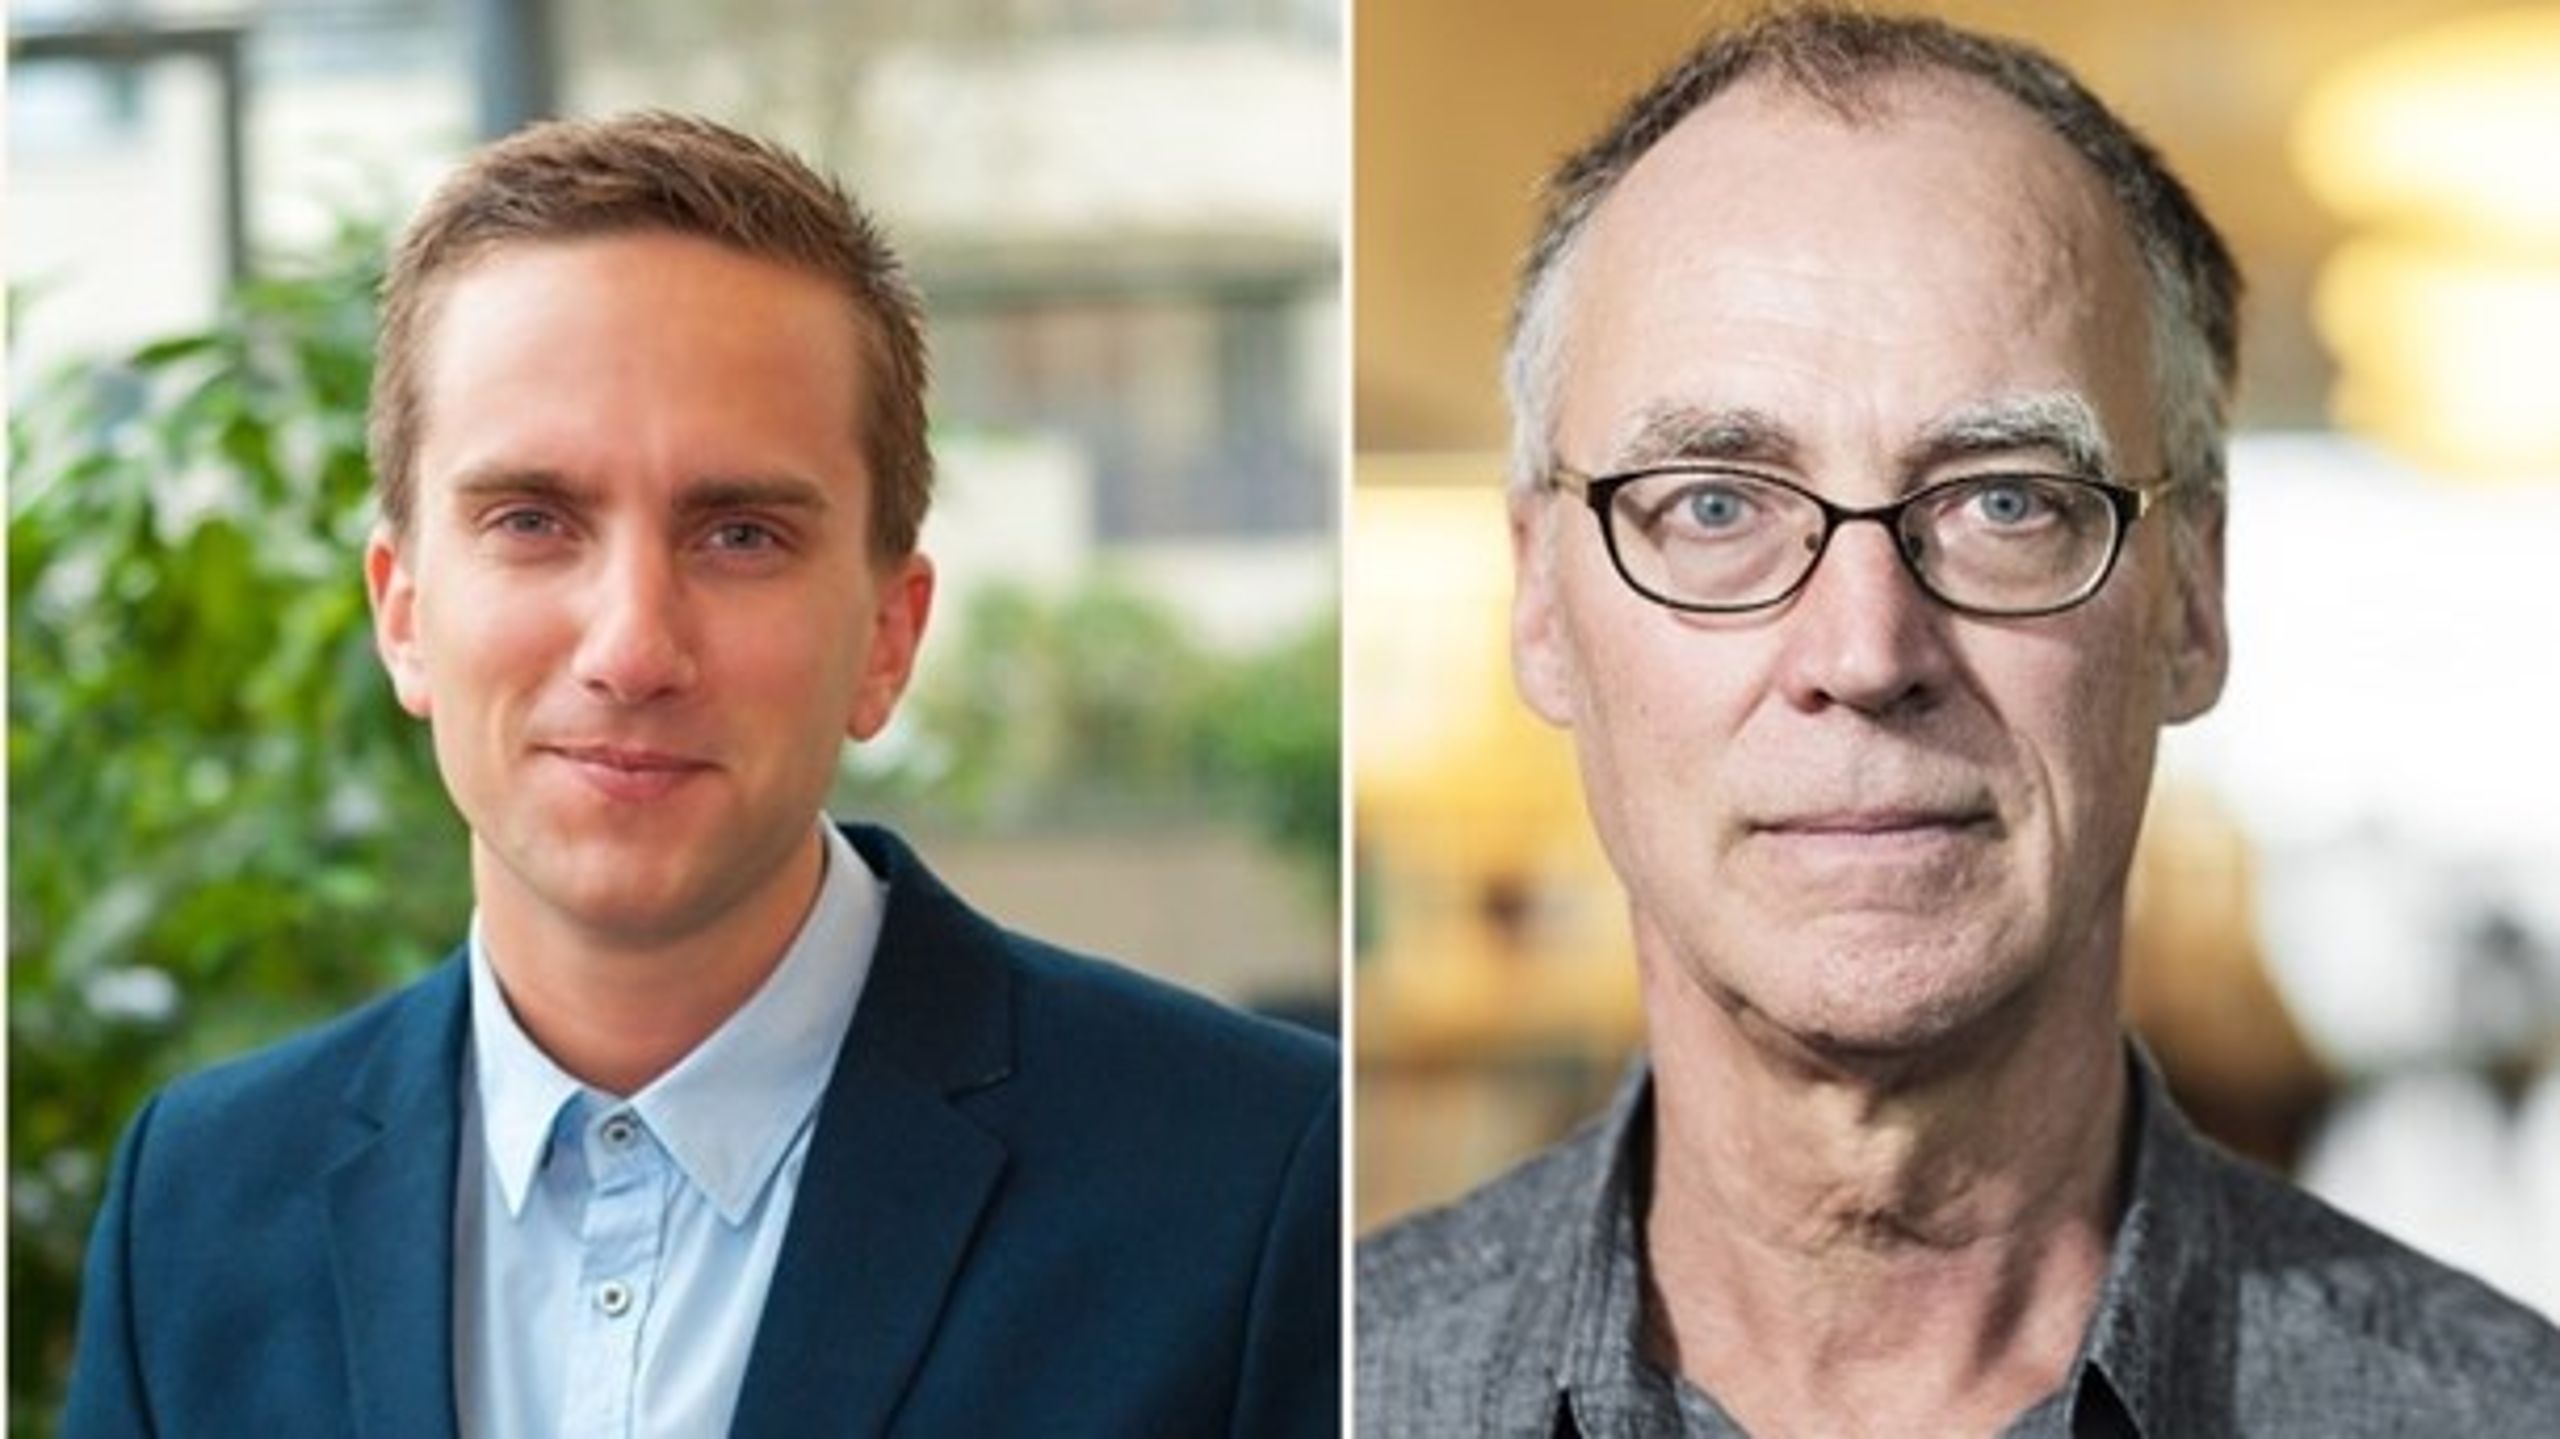 Isak Skogstad, lärare, och Mats Olsson, lärare på förskollärareprogrammet på Malmö Universitet är båda kritiska till siffrorna och vill göra om utbildningarna.